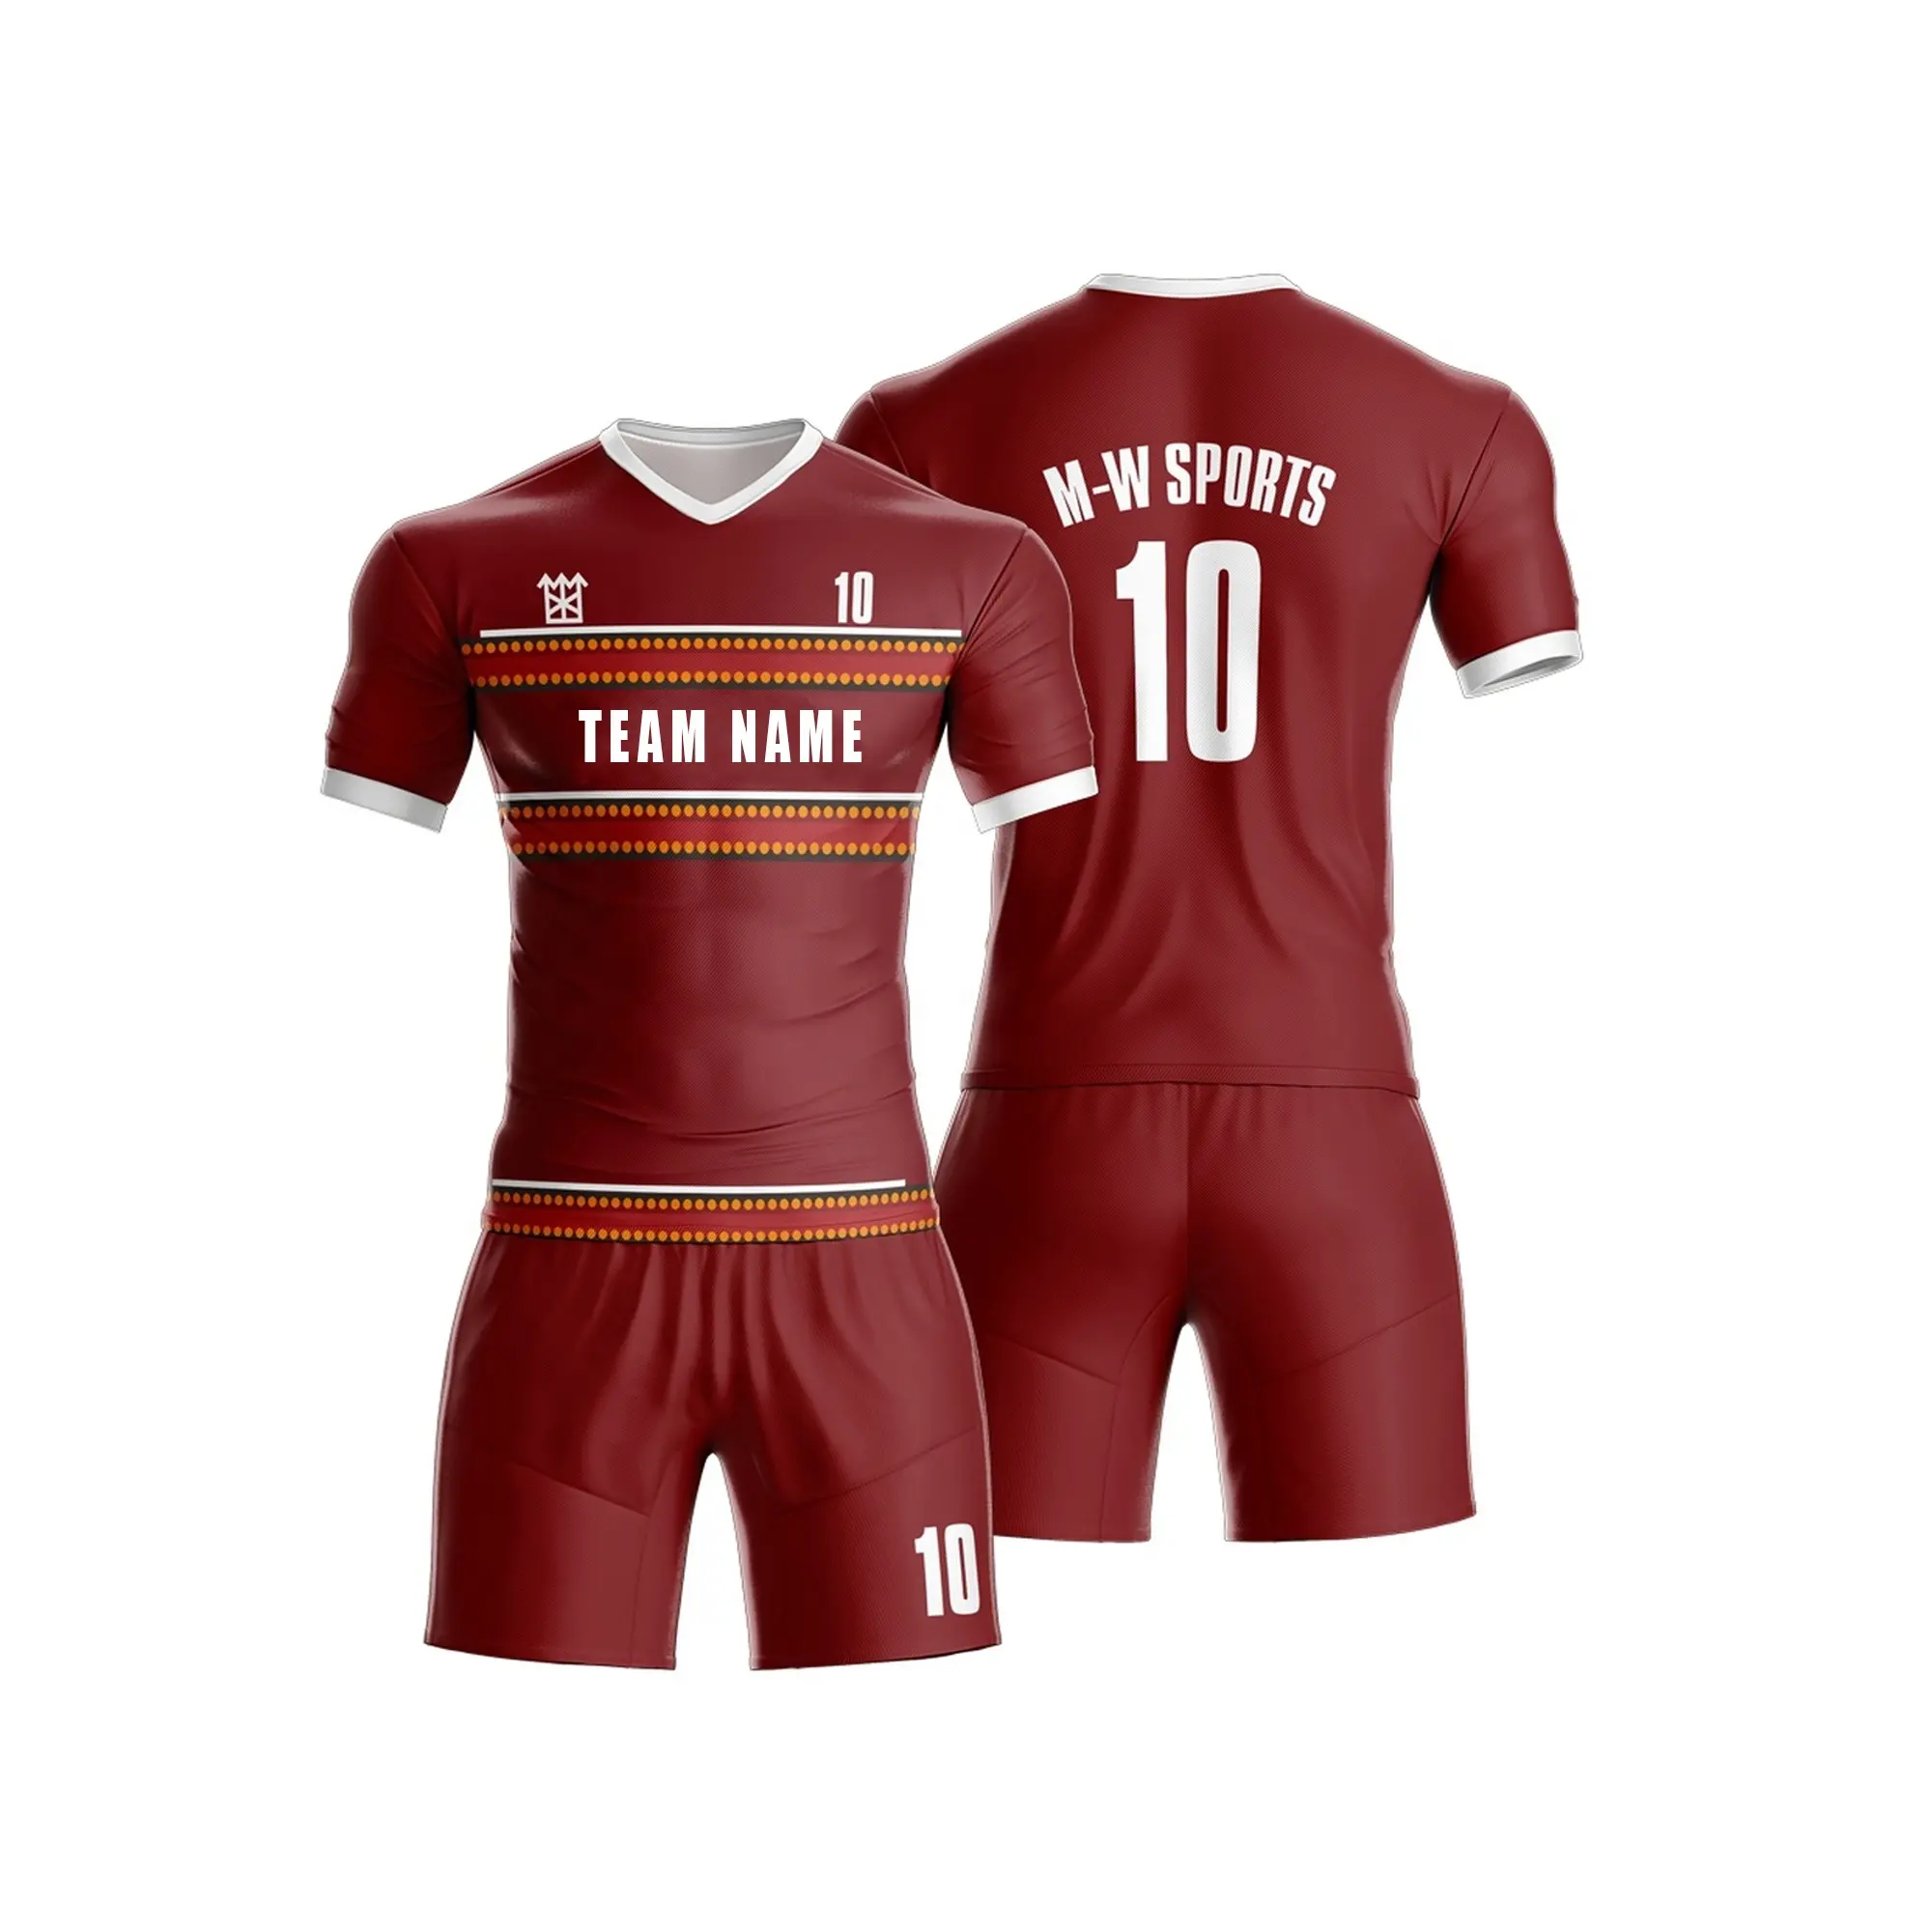 Kişiselleştirilmiş erkek futbol futbol üniformaları çocuklar Jersey yetişkin süblimasyon futbol formaları takım kıyafet antrenman kıyafeti spor forması